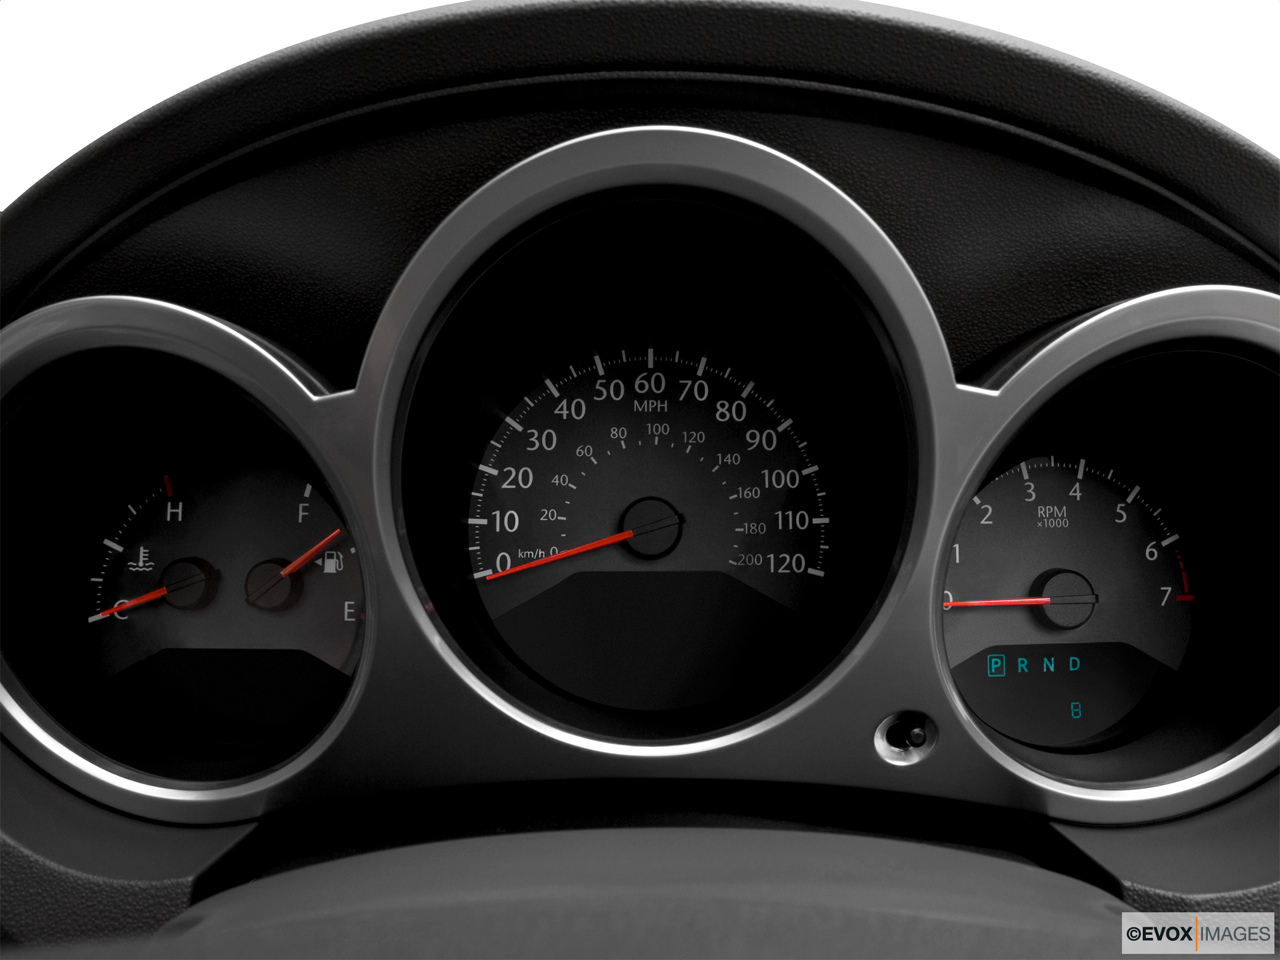 2010 Chrysler Sebring Touring Speedometer/tachometer. 